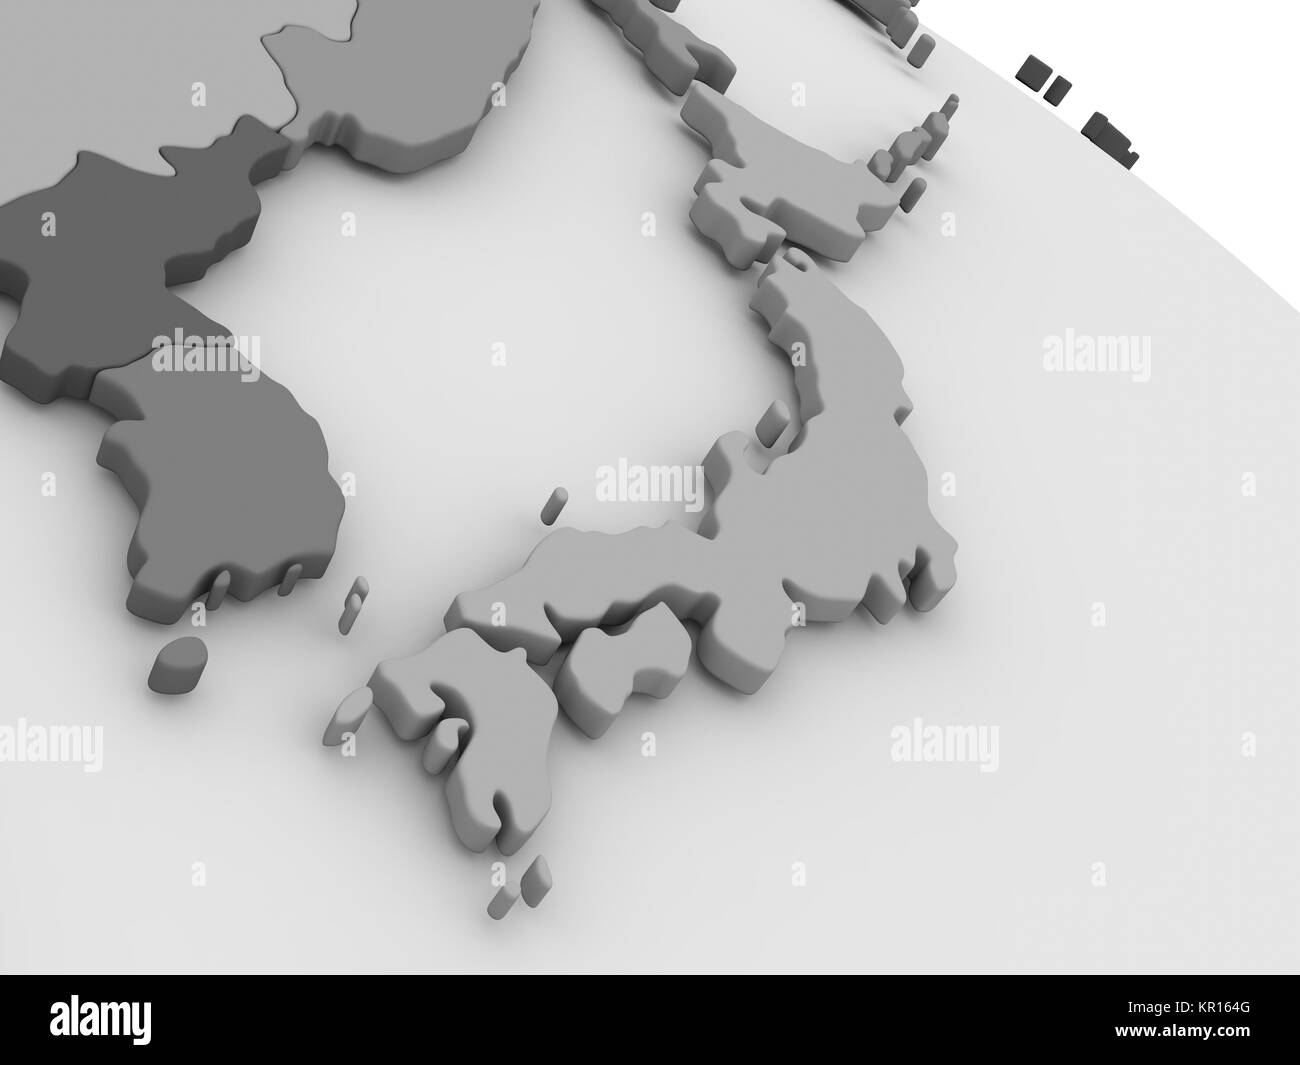 Japon Le 3D de la carte grise Banque D'Images